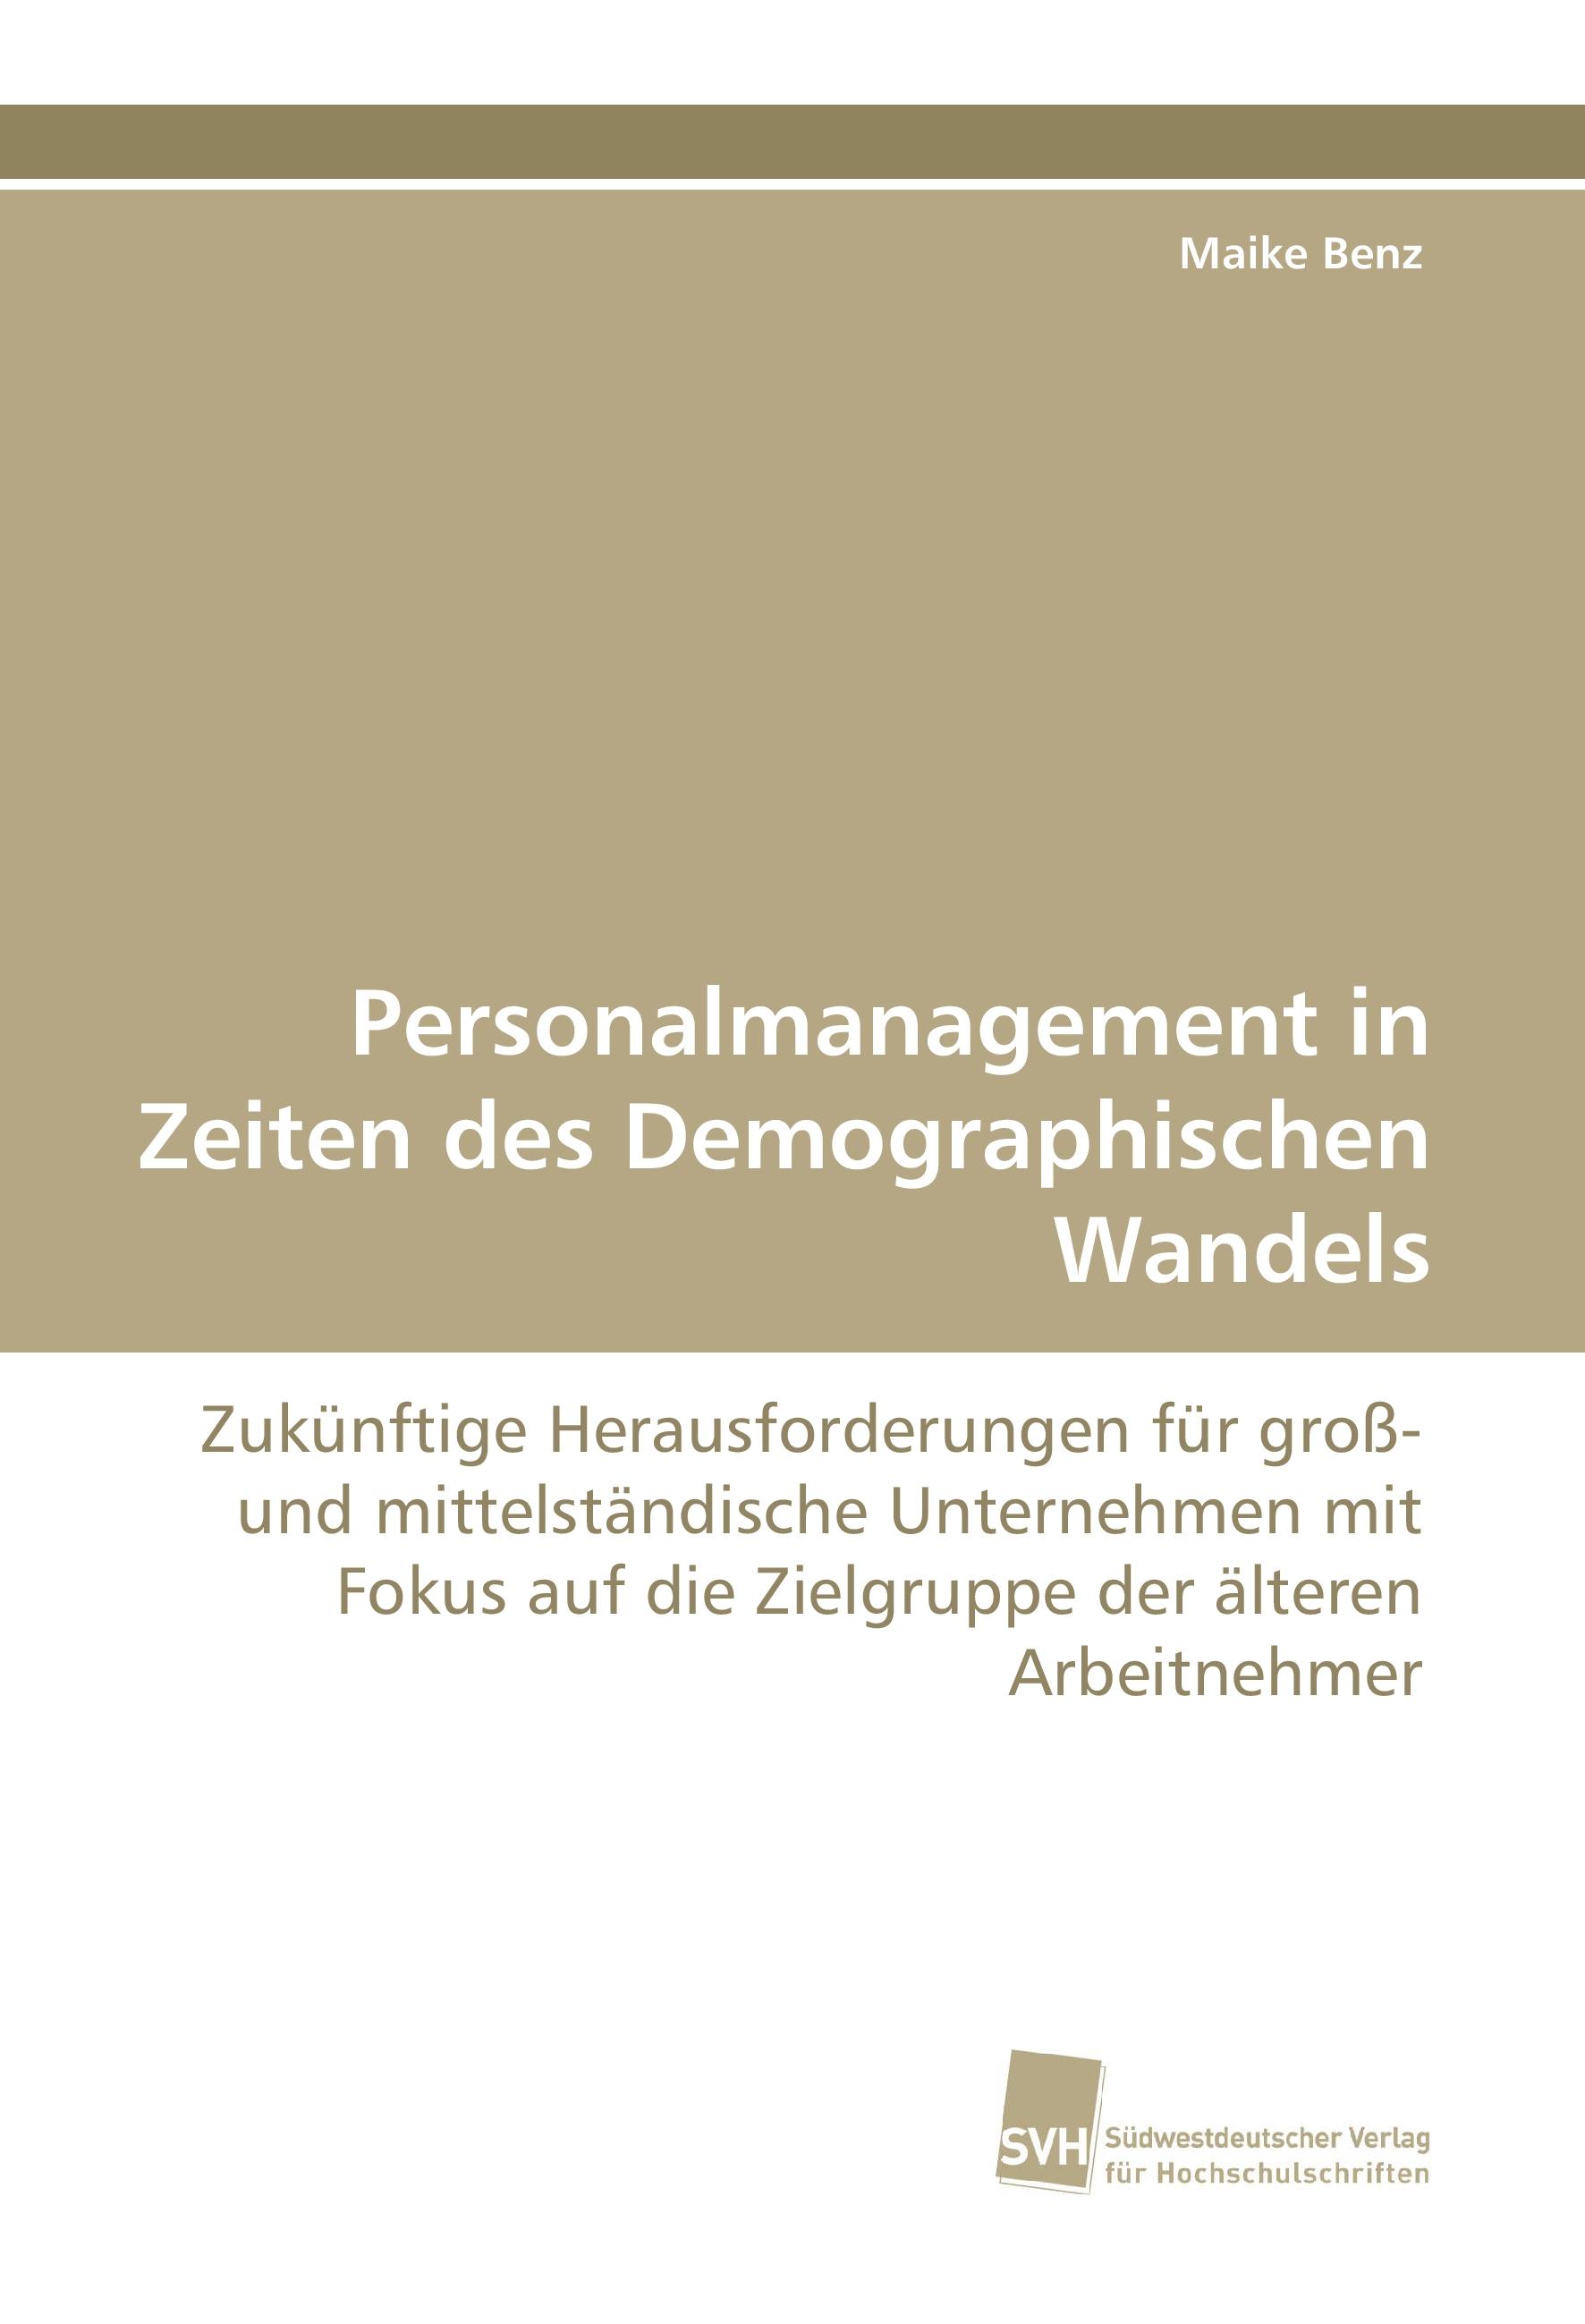 Personalmanagement in Zeiten des Demographischen Wandels  Zukünftige Herausforderungen für groß- und mittelständische Unternehmen mit Fokus auf die Zielgruppe der älteren Arbeitnehmer  Maike Benz - Benz, Maike